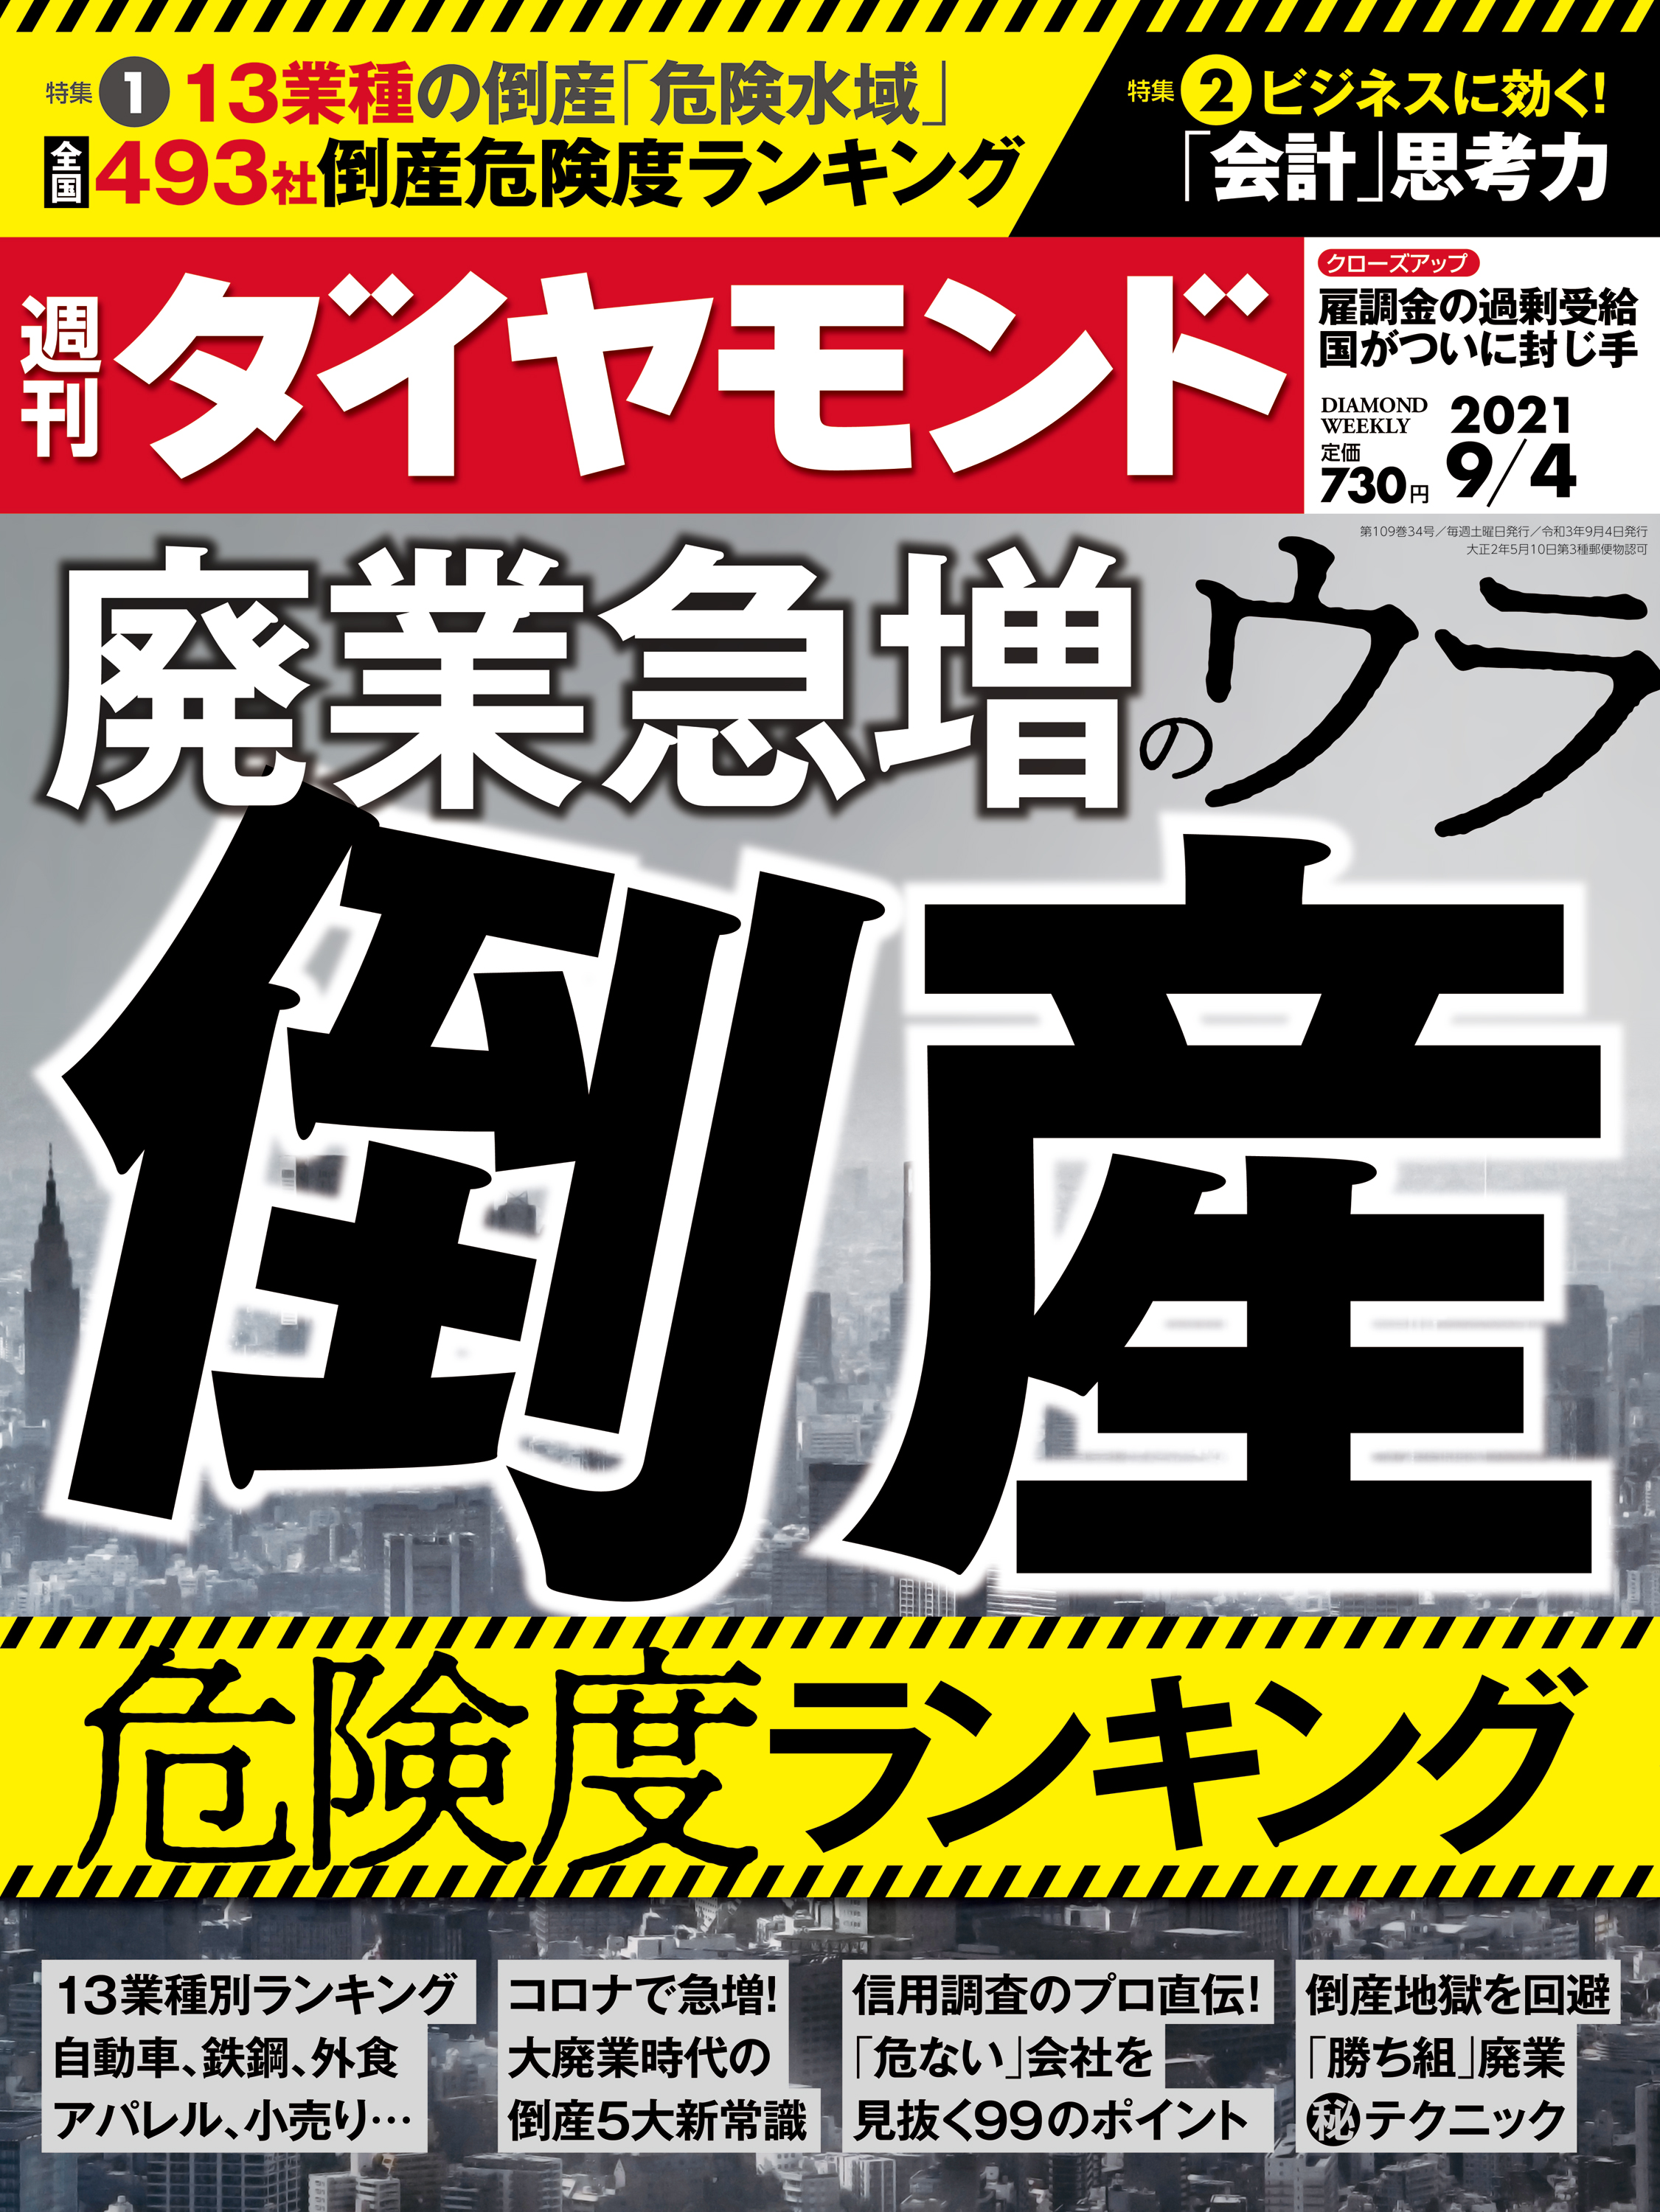 週刊ダイヤモンド 21年9月4日号 - ダイヤモンド社 - 漫画・ラノベ